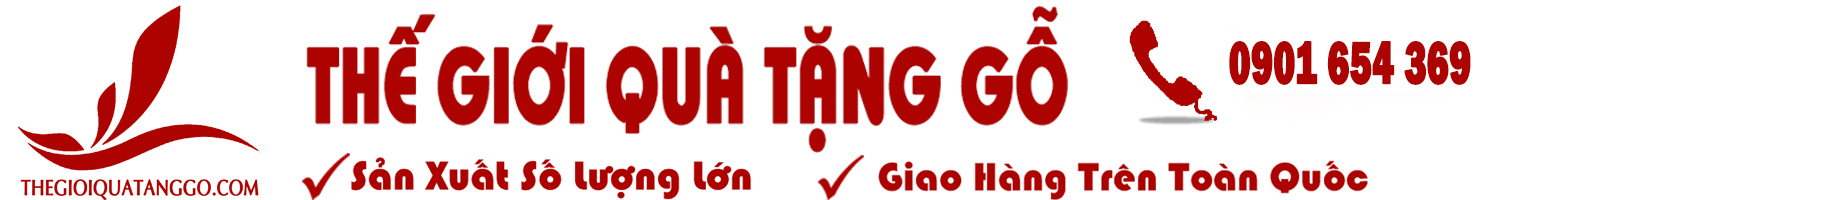 thegioiquatanggo.com